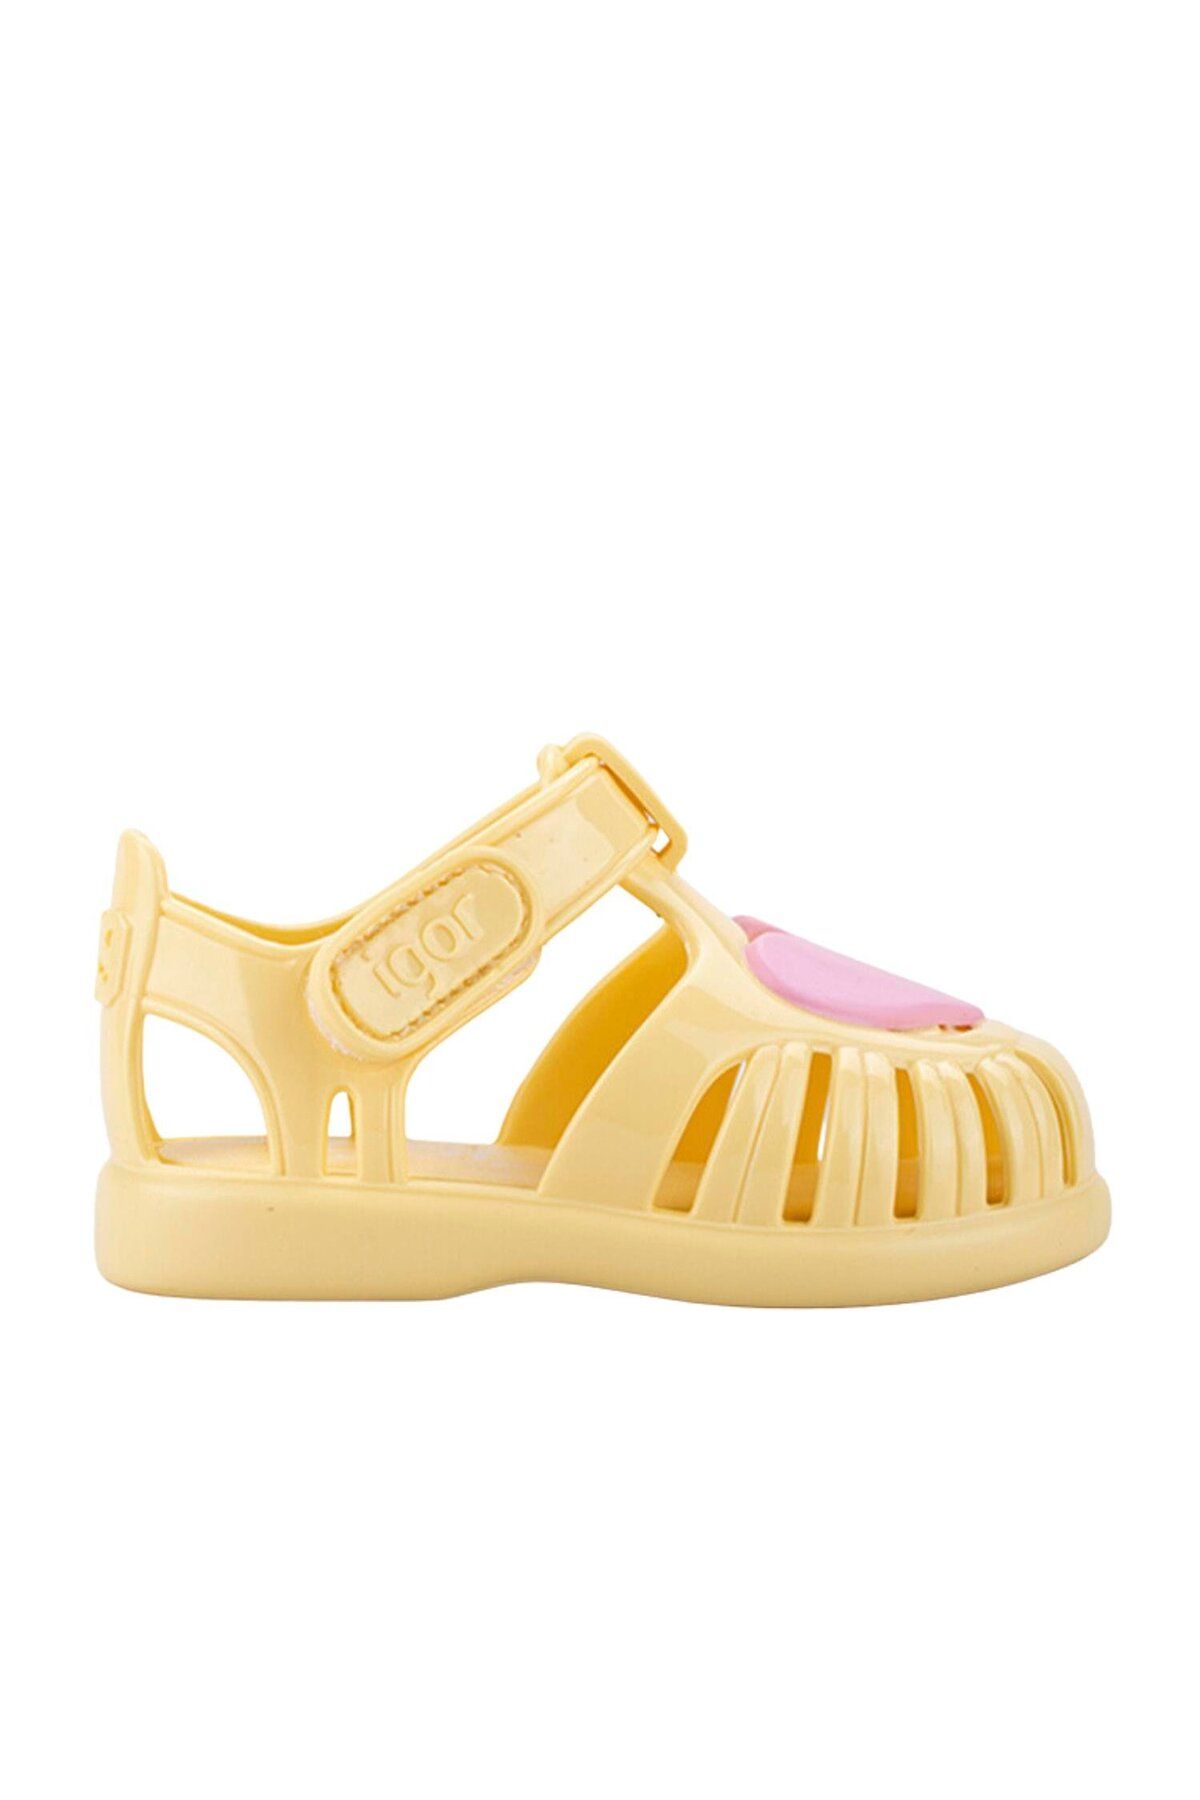 IGOR Çocuk Cırtlı Sandalet S10310 Tobby Gloss Love